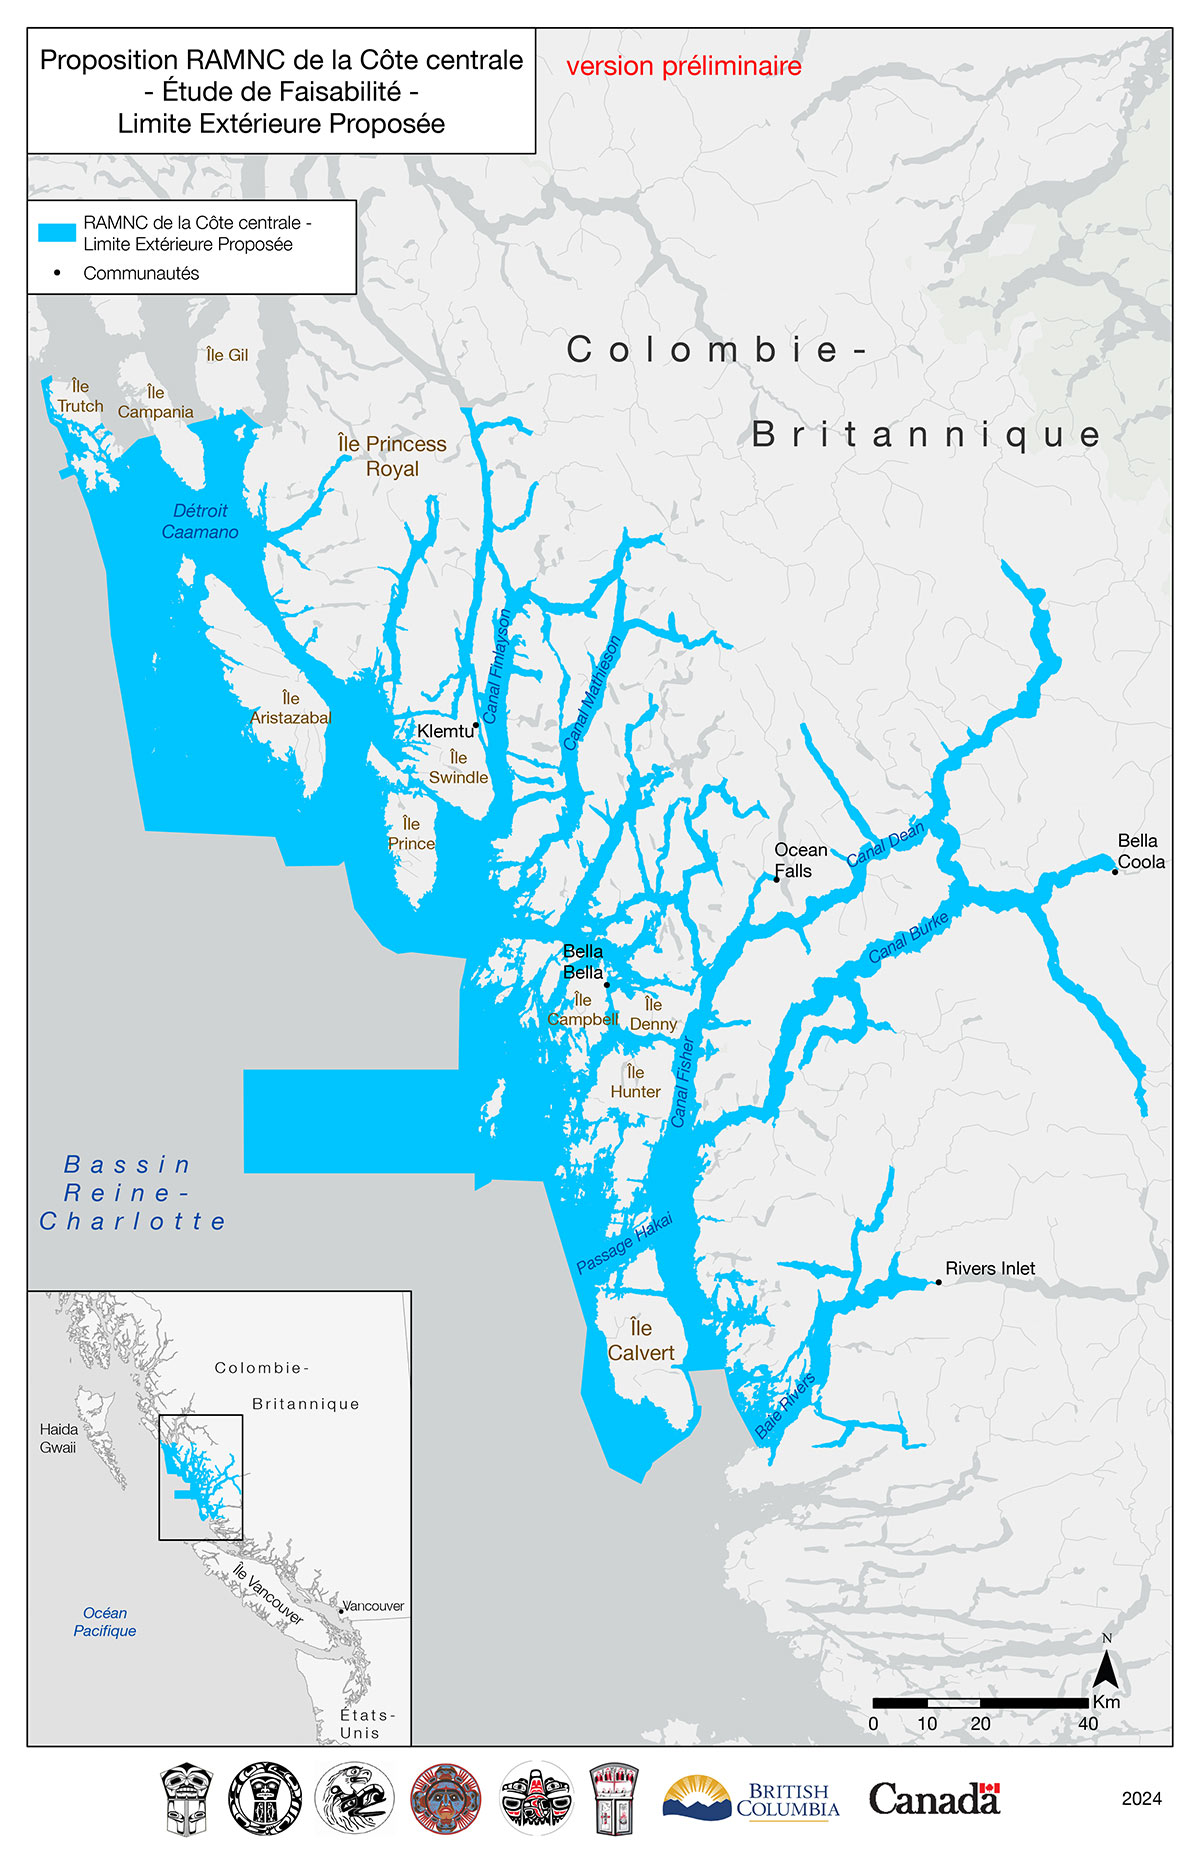 Limite extérieure proposée pour la phase d’évaluation de faisabilité du projet de réserve d’aire marine nationale de conservation de la Côte centrale, dans la région marine du bassin de la Reine-Charlotte, en Colombie-Britannique